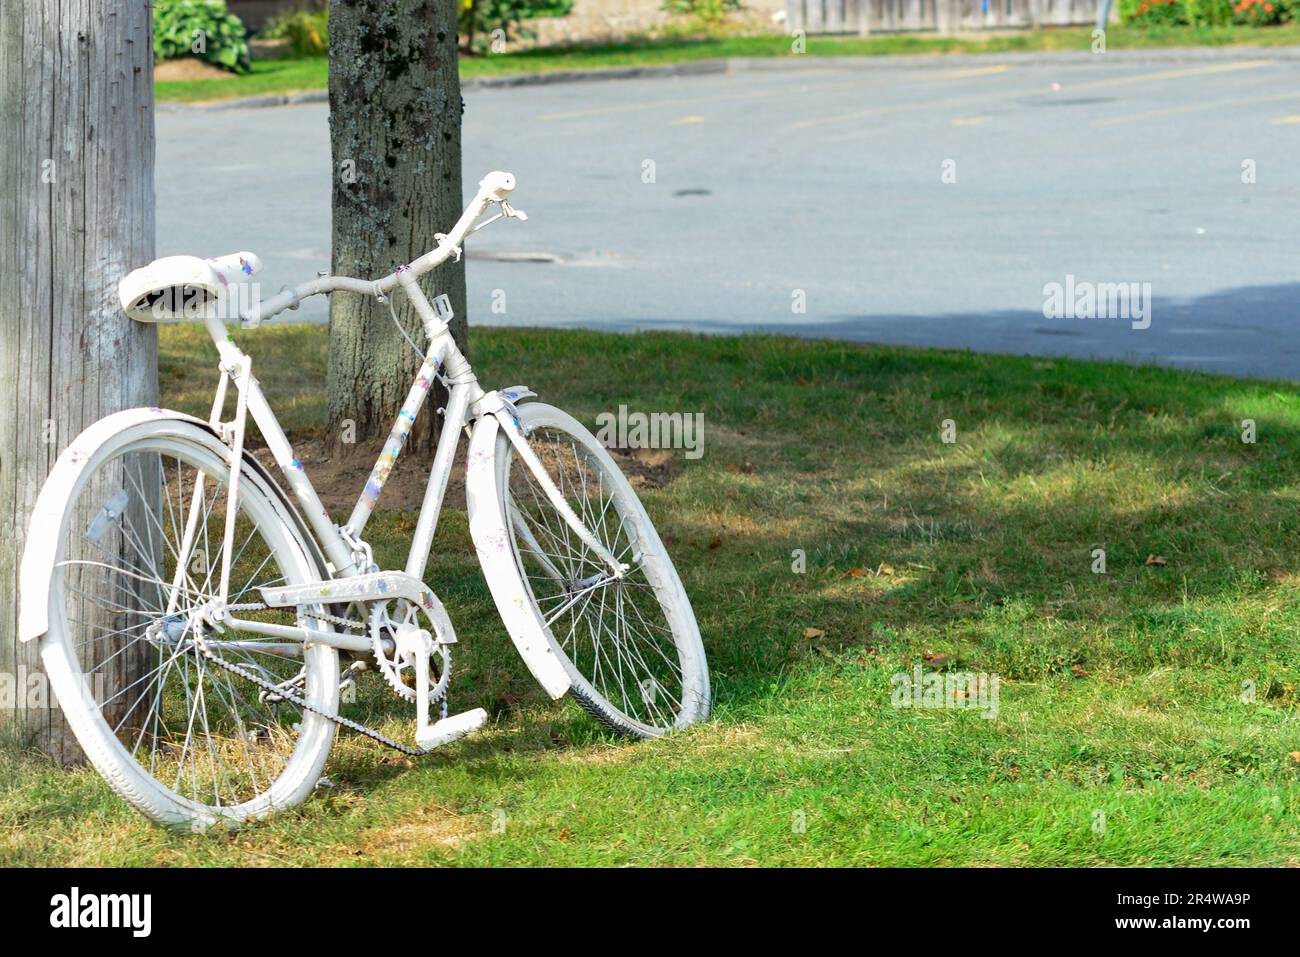 Una bicicletta per adulti dipinta di bianco come luogo commemorativo di un precedente incidente ciclistico. La bicicletta fantasma è un simbolo di memoria e un promemoria per condividere la strada. Foto Stock